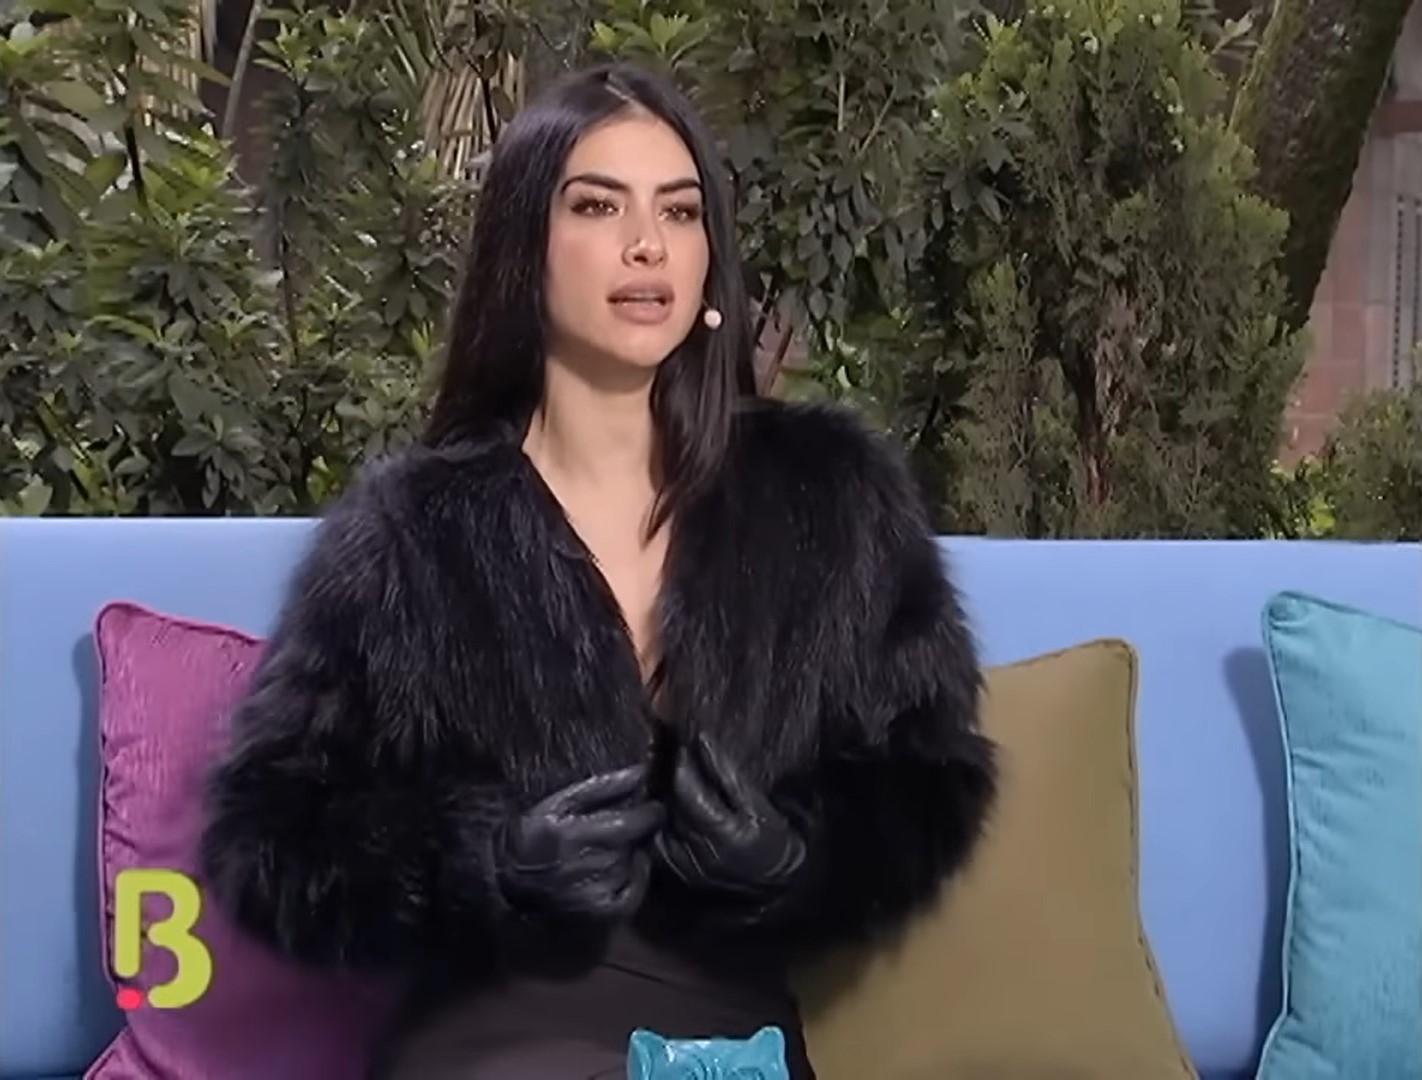 Jessica Cediel sorprende al confesar que compra ropa barata en popular zona de Bogotá "Normal mami"